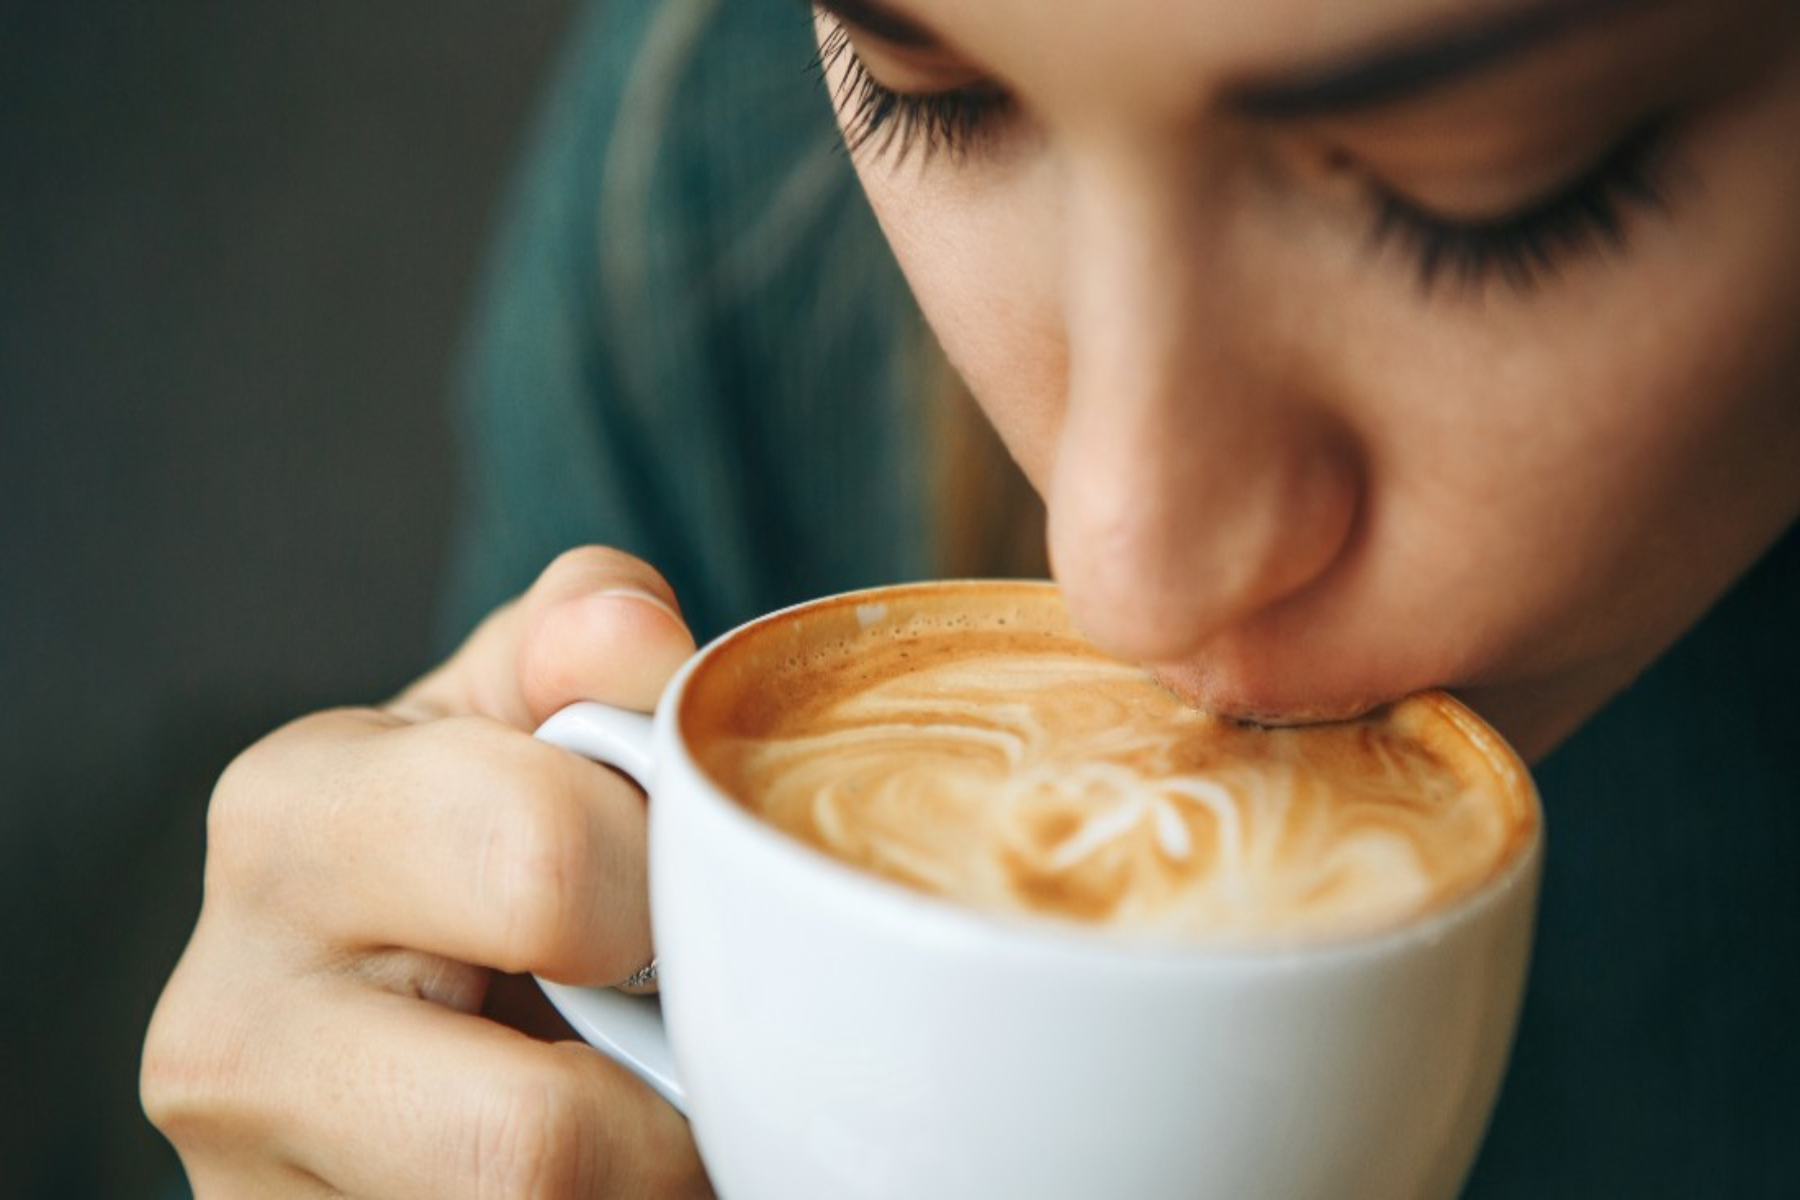 Έρευνα: Ο καφές με γάλα έχει αντιφλεγμονώδη δράση για τον άνθρωπο